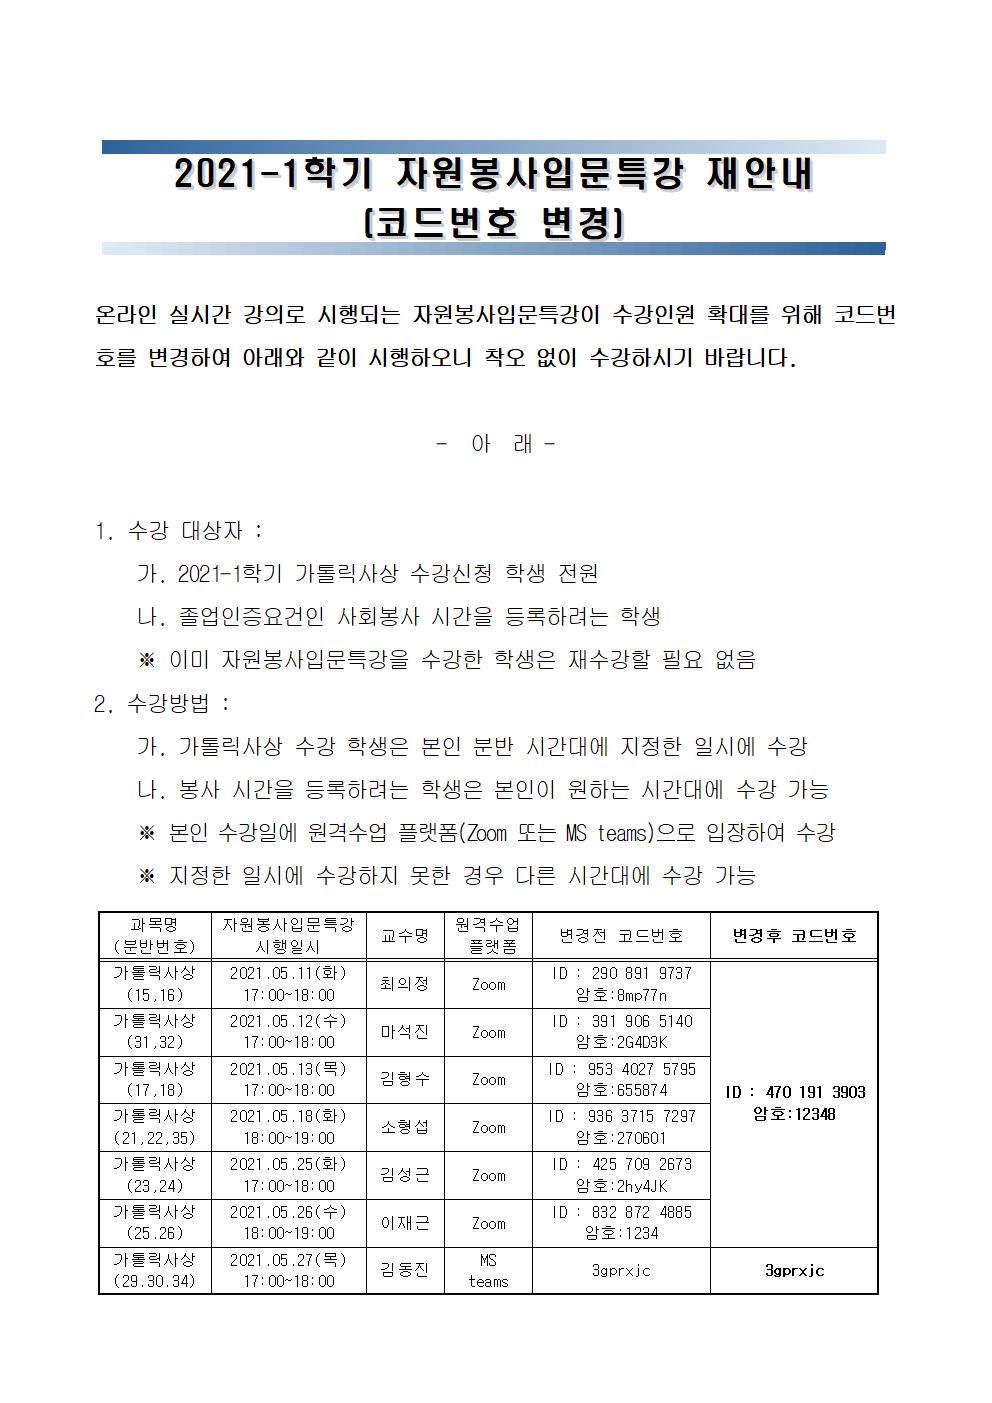 2021-1학기 자원봉사입문특강 재안내 [코드번호 변경]